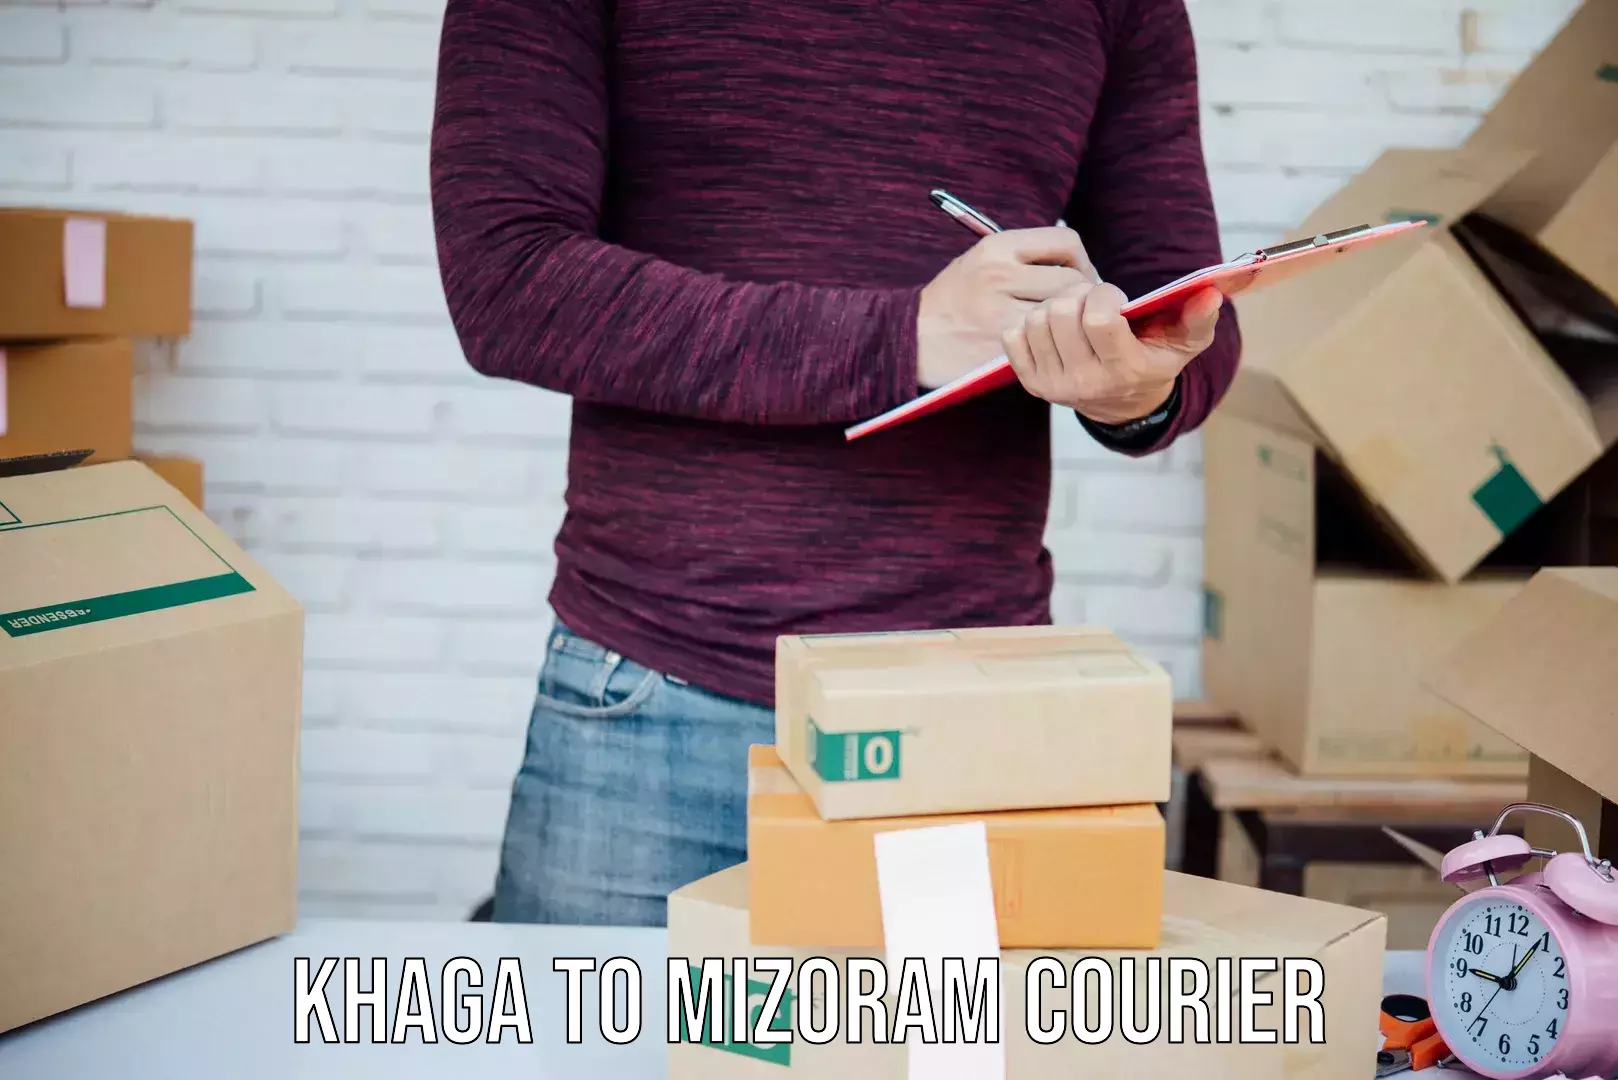 Regular parcel service Khaga to Saiha